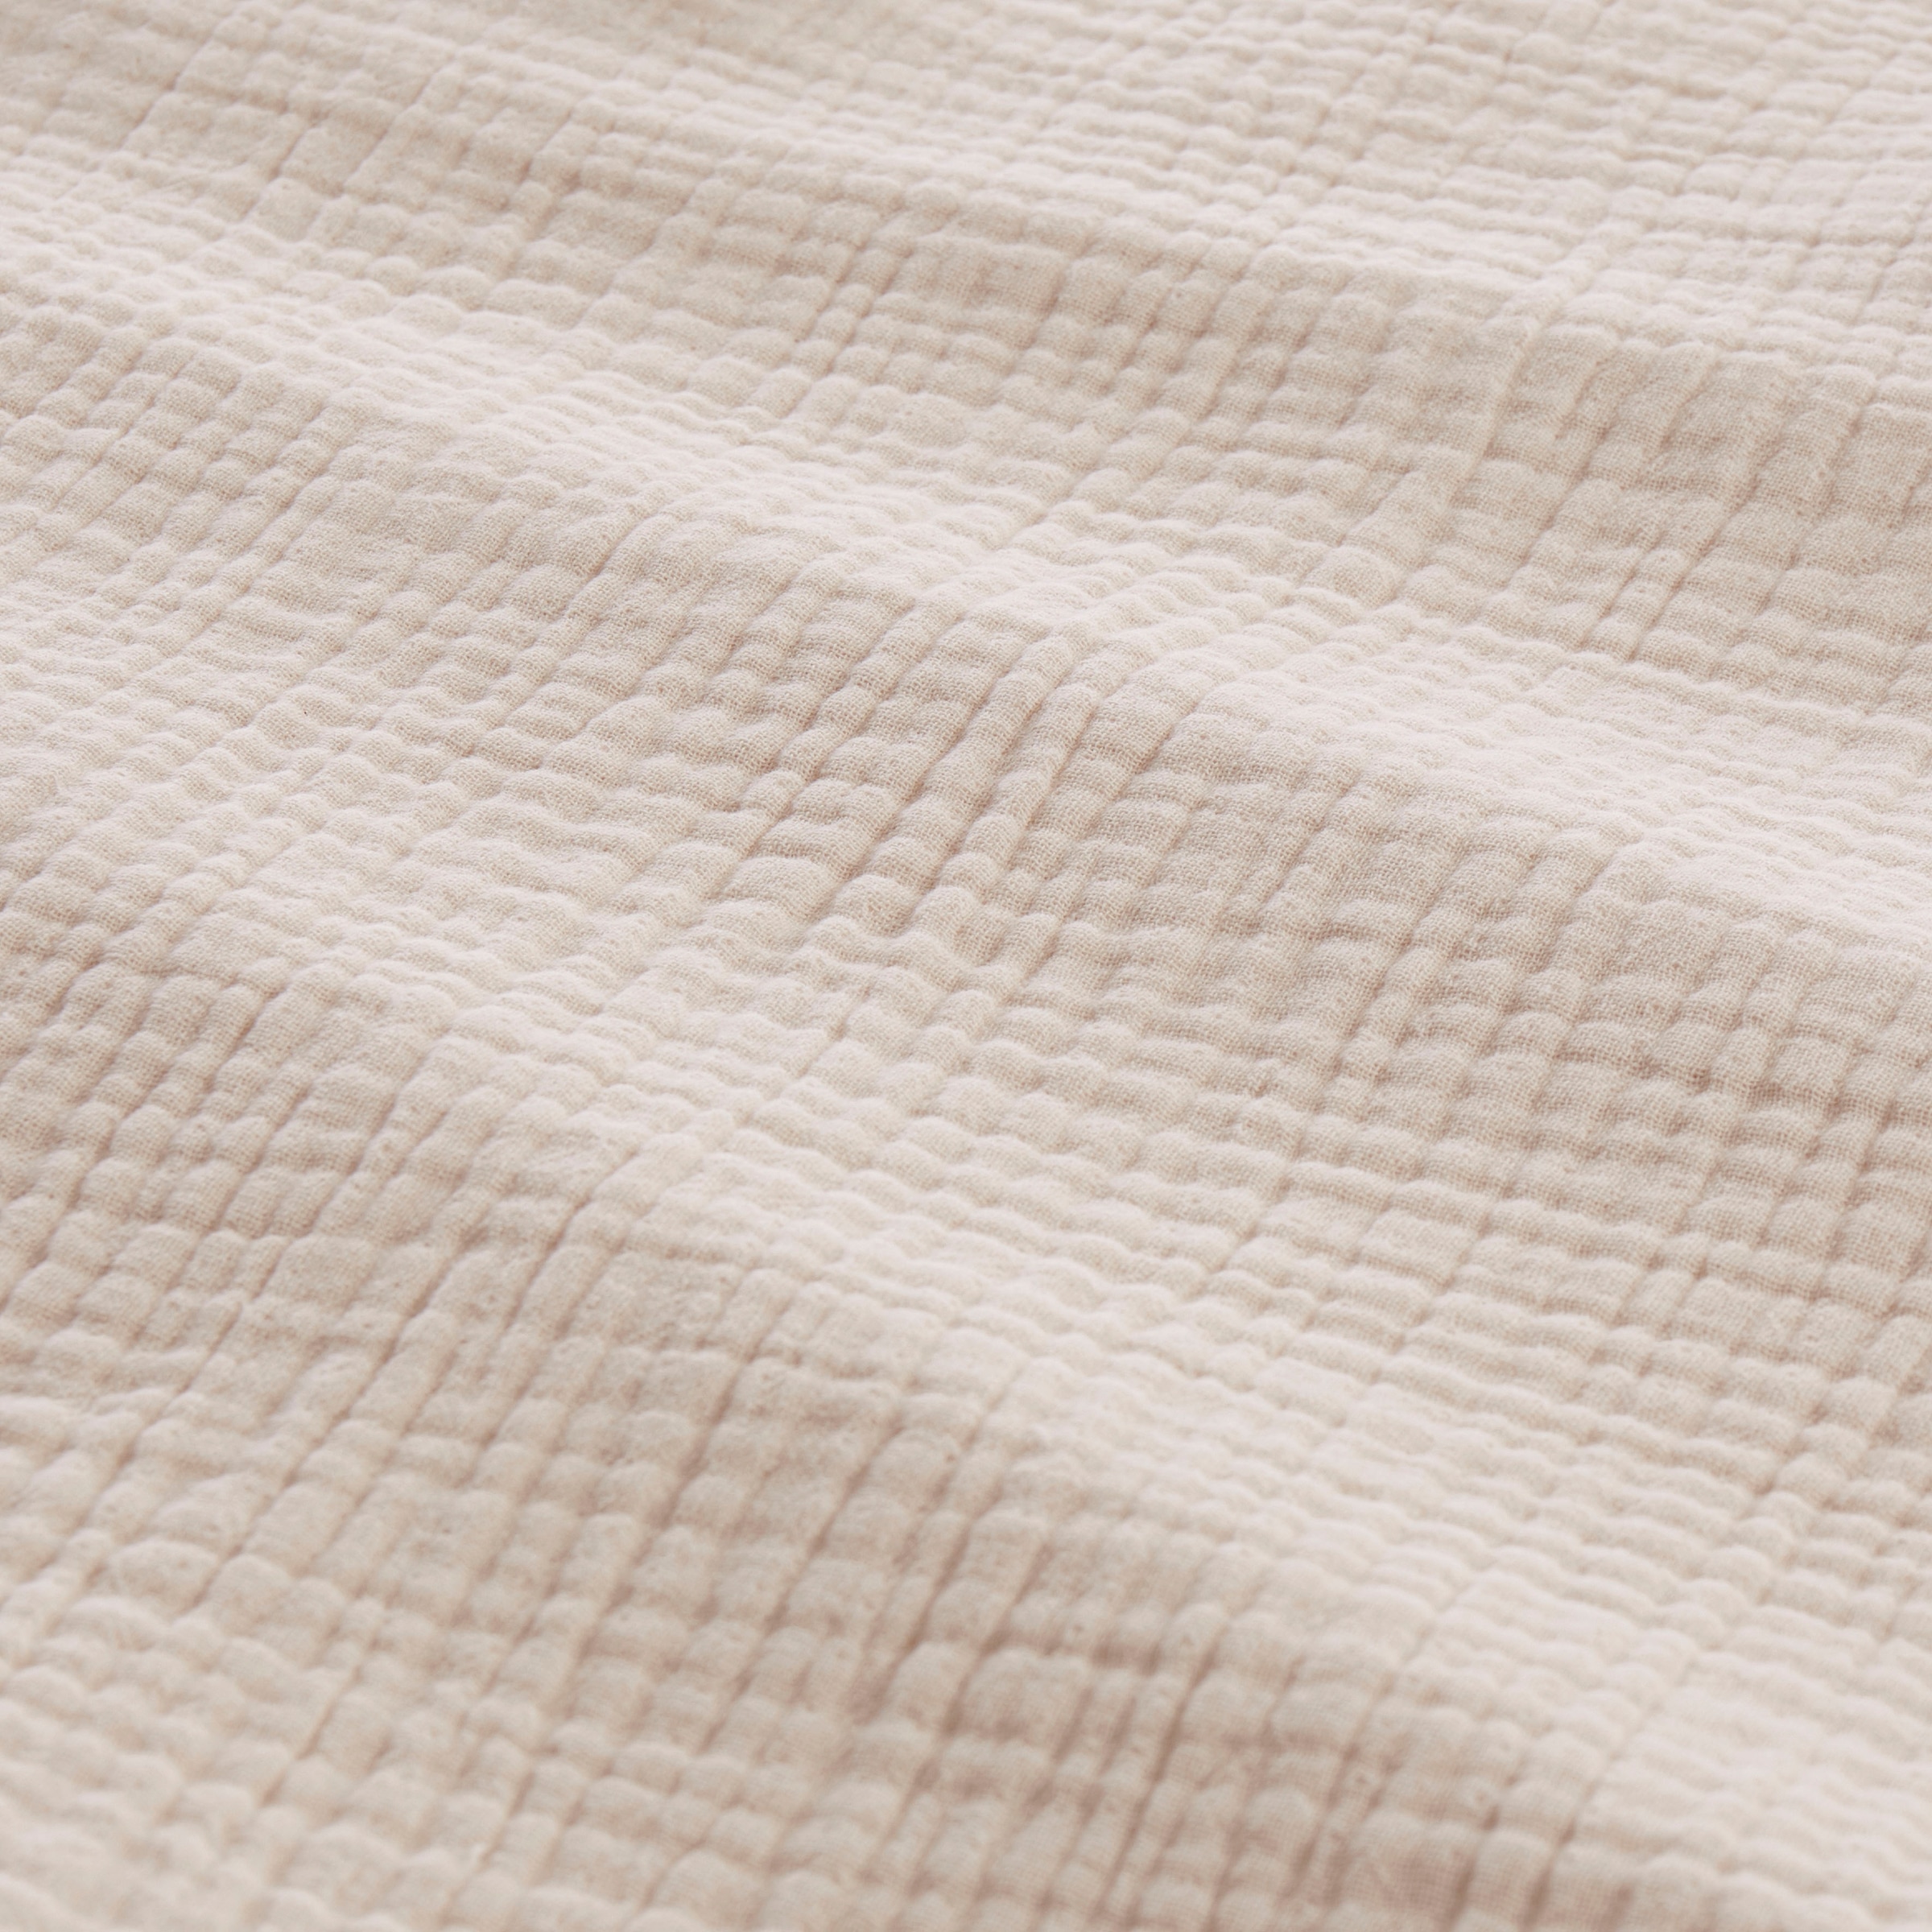 andas Bettwäsche »Svensby in Gr. 135x200 oder 155x220 cm«, (2 tlg.), Bettwäsche aus Baumwolle in Musselin-Qualität, unifarbene Bettwäsche